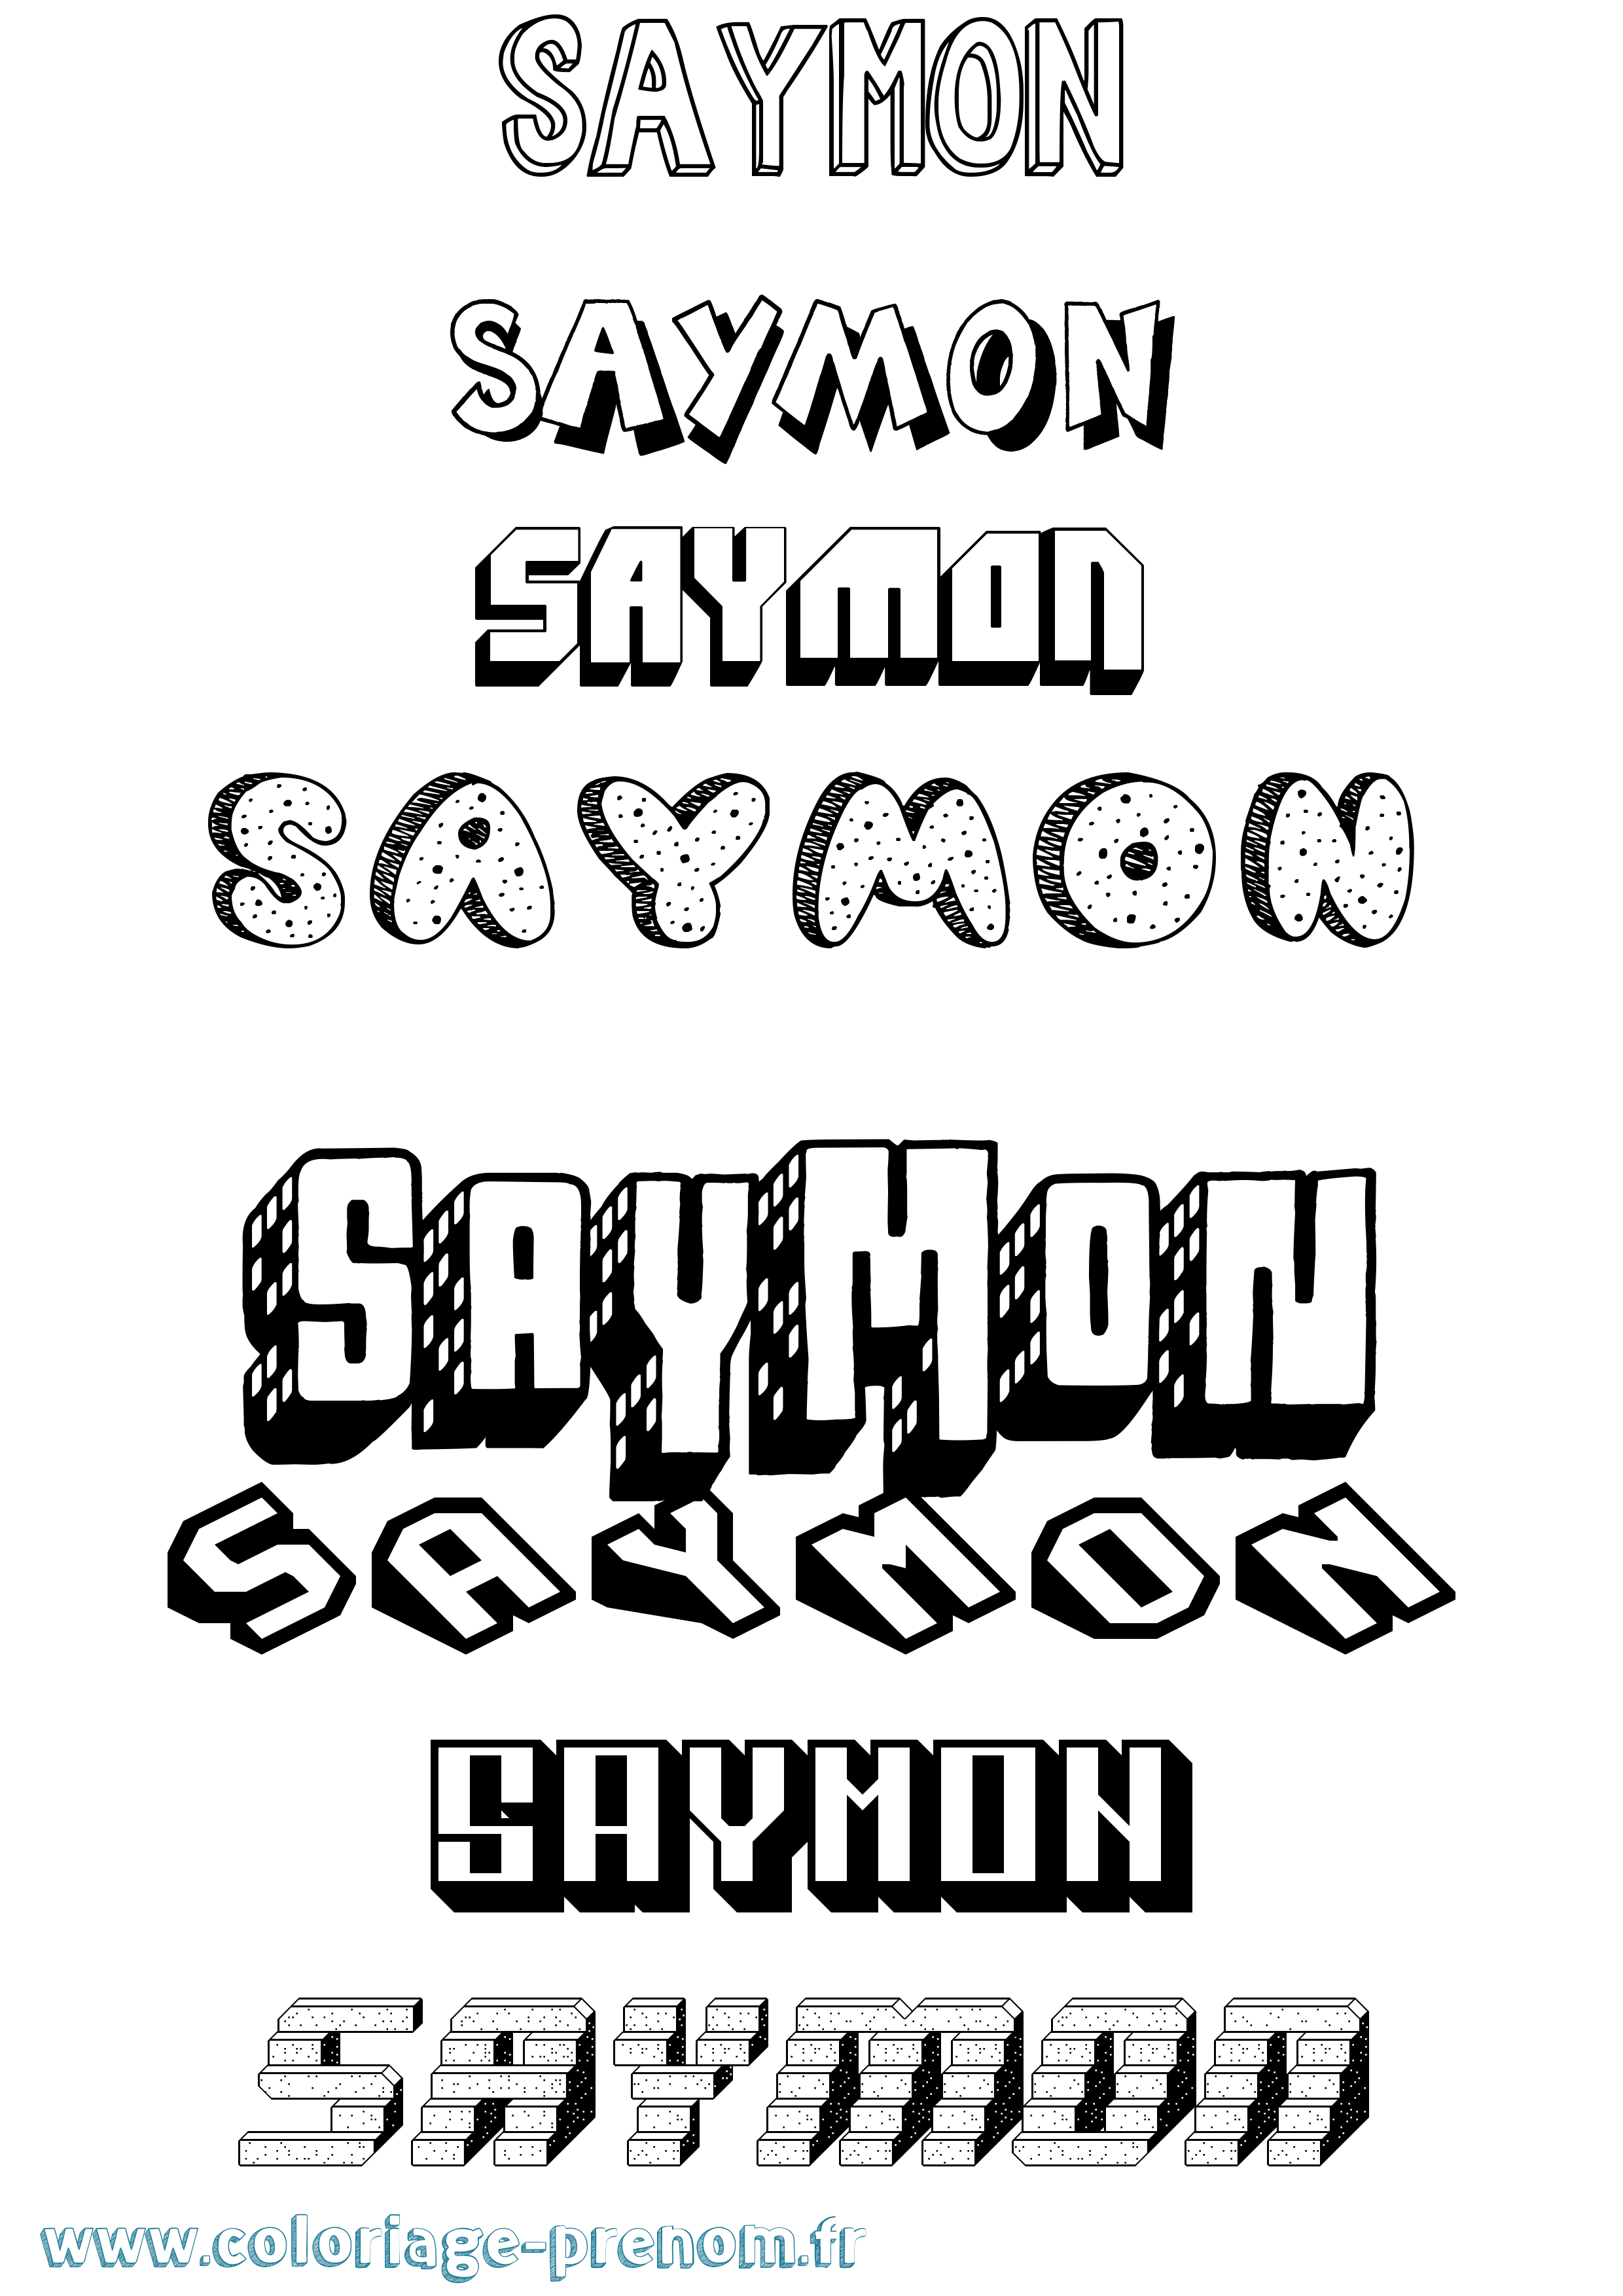 Coloriage prénom Saymon Effet 3D